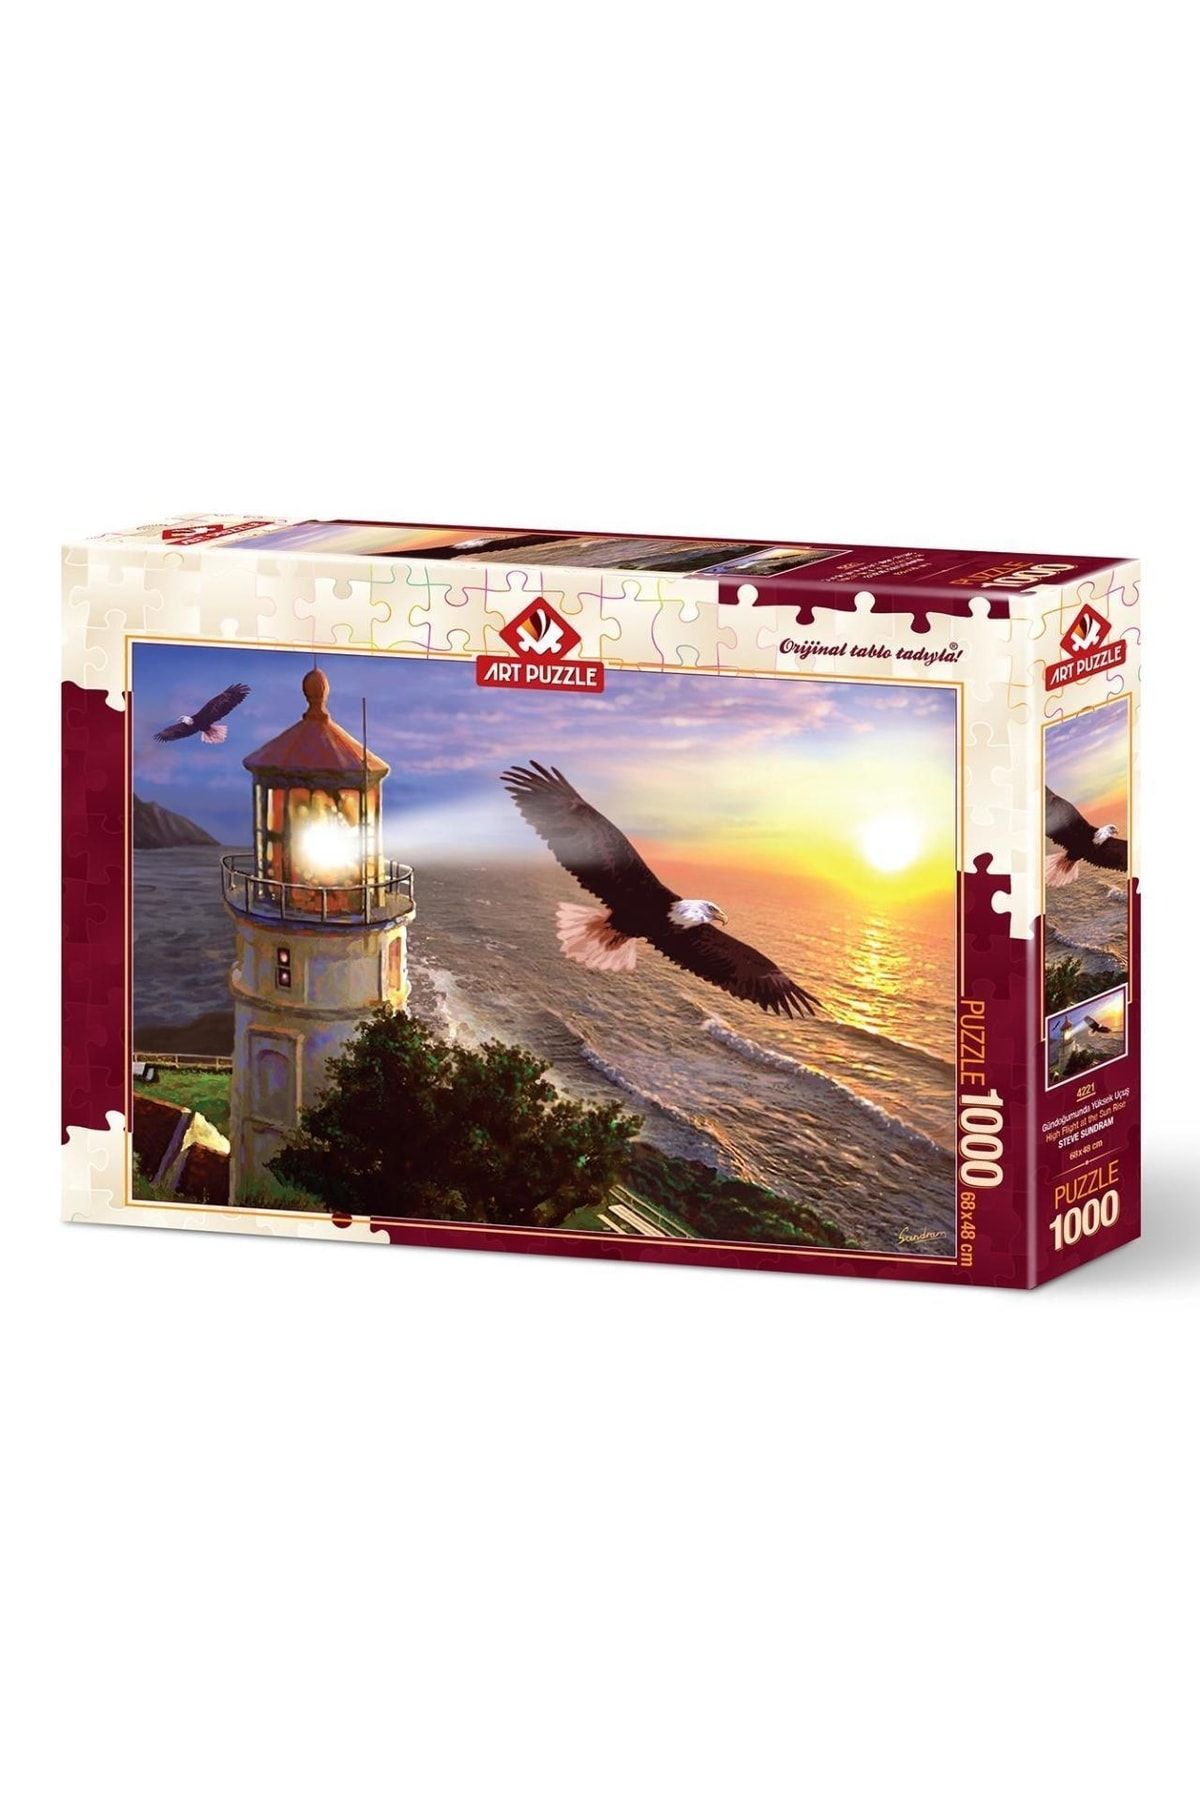 Doğan Oyuncak Dünyası Art Puzzle Gündoğumunda Yüksek Uçuş 1000 Parça Puzzle 4221 - Puzzle Seti - Yapboz - Yap-boz Puzzle